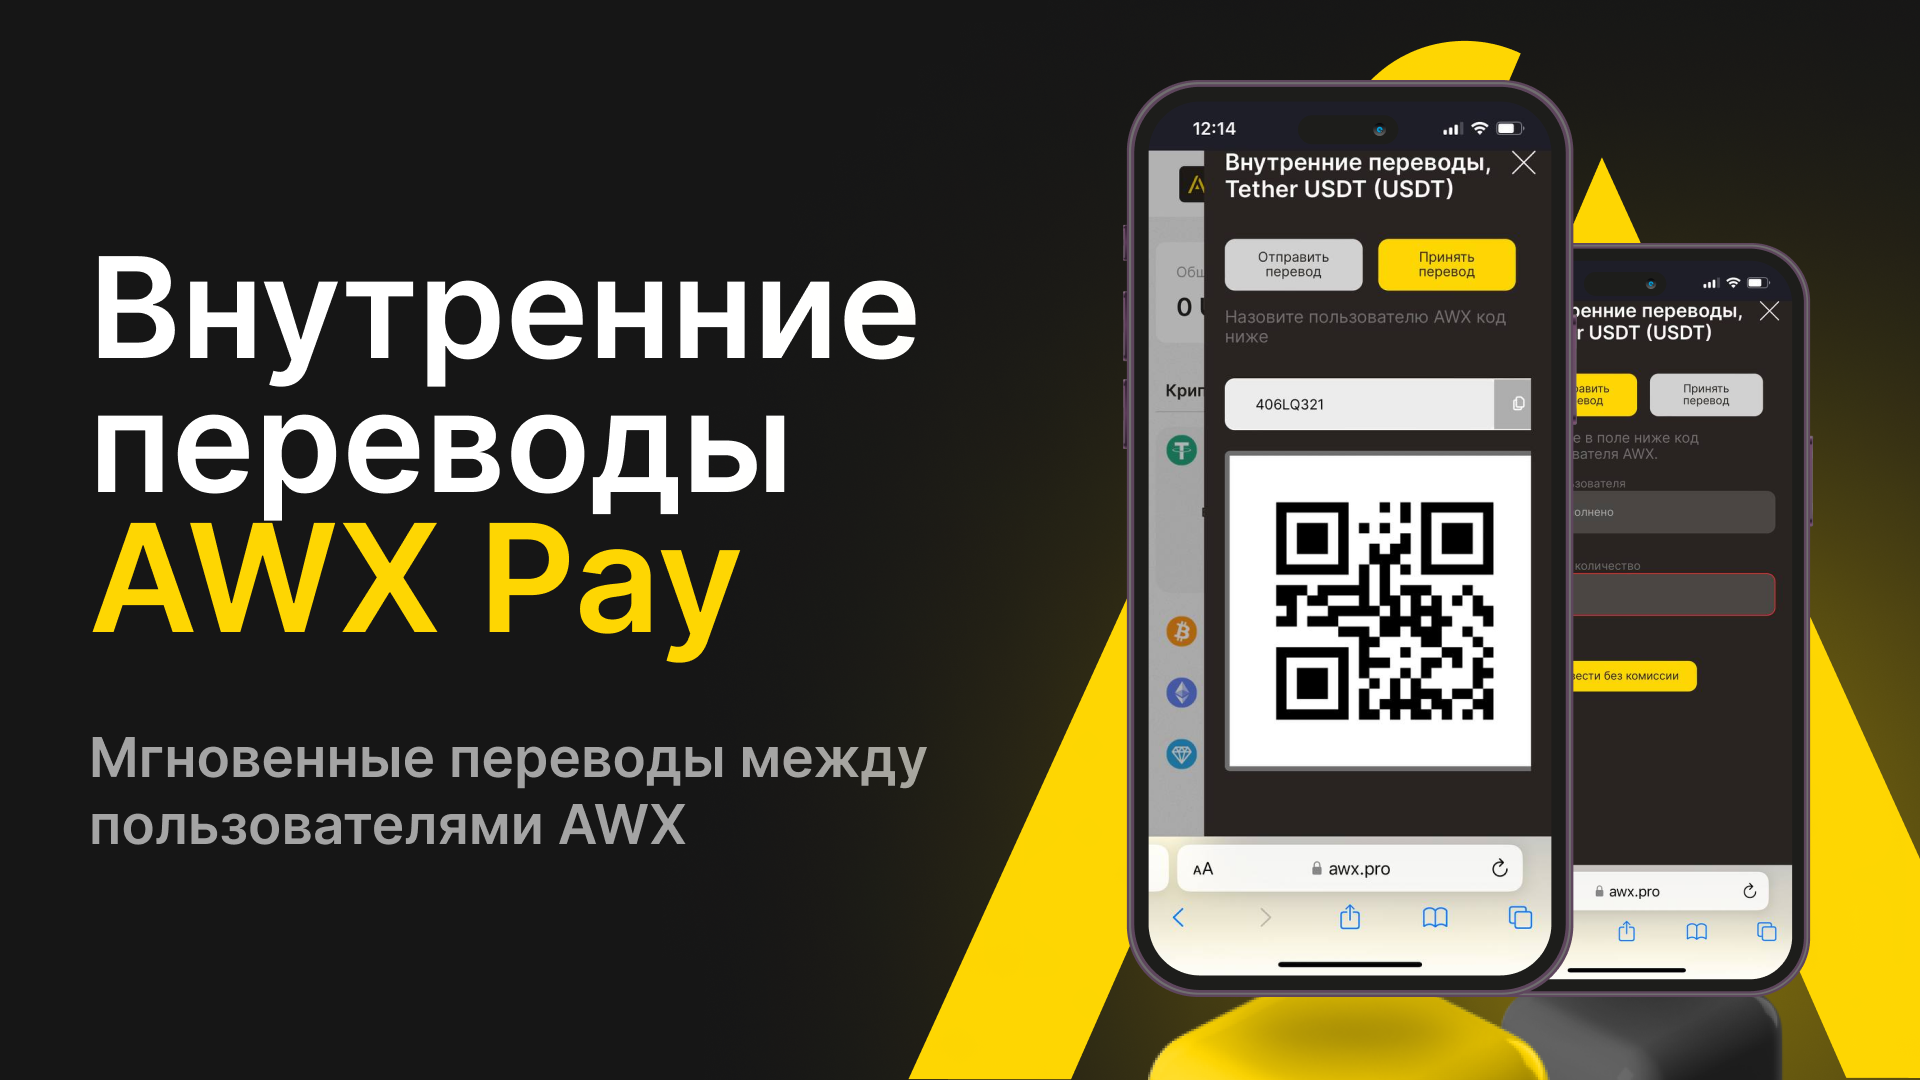 Инструкция по внутренним переводам на AWX по ID Pay